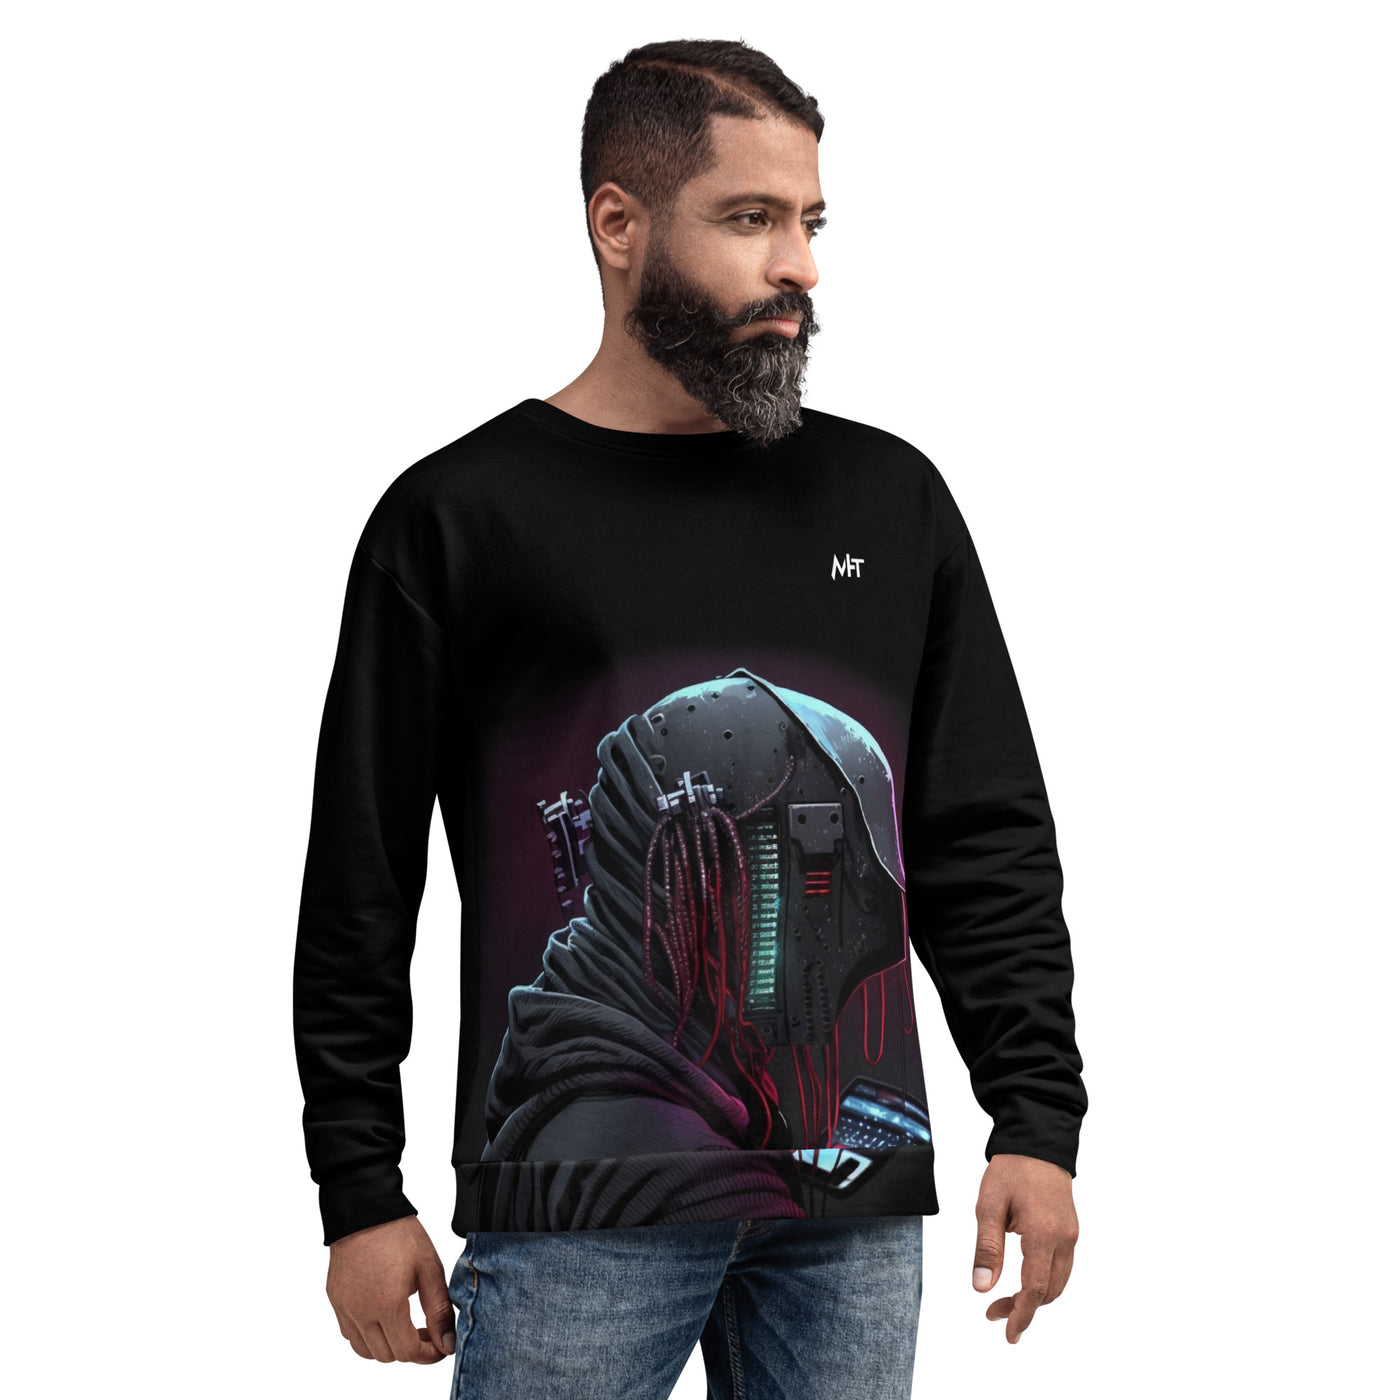 CyberWare Assassin V4 - Unisex Sweatshirt